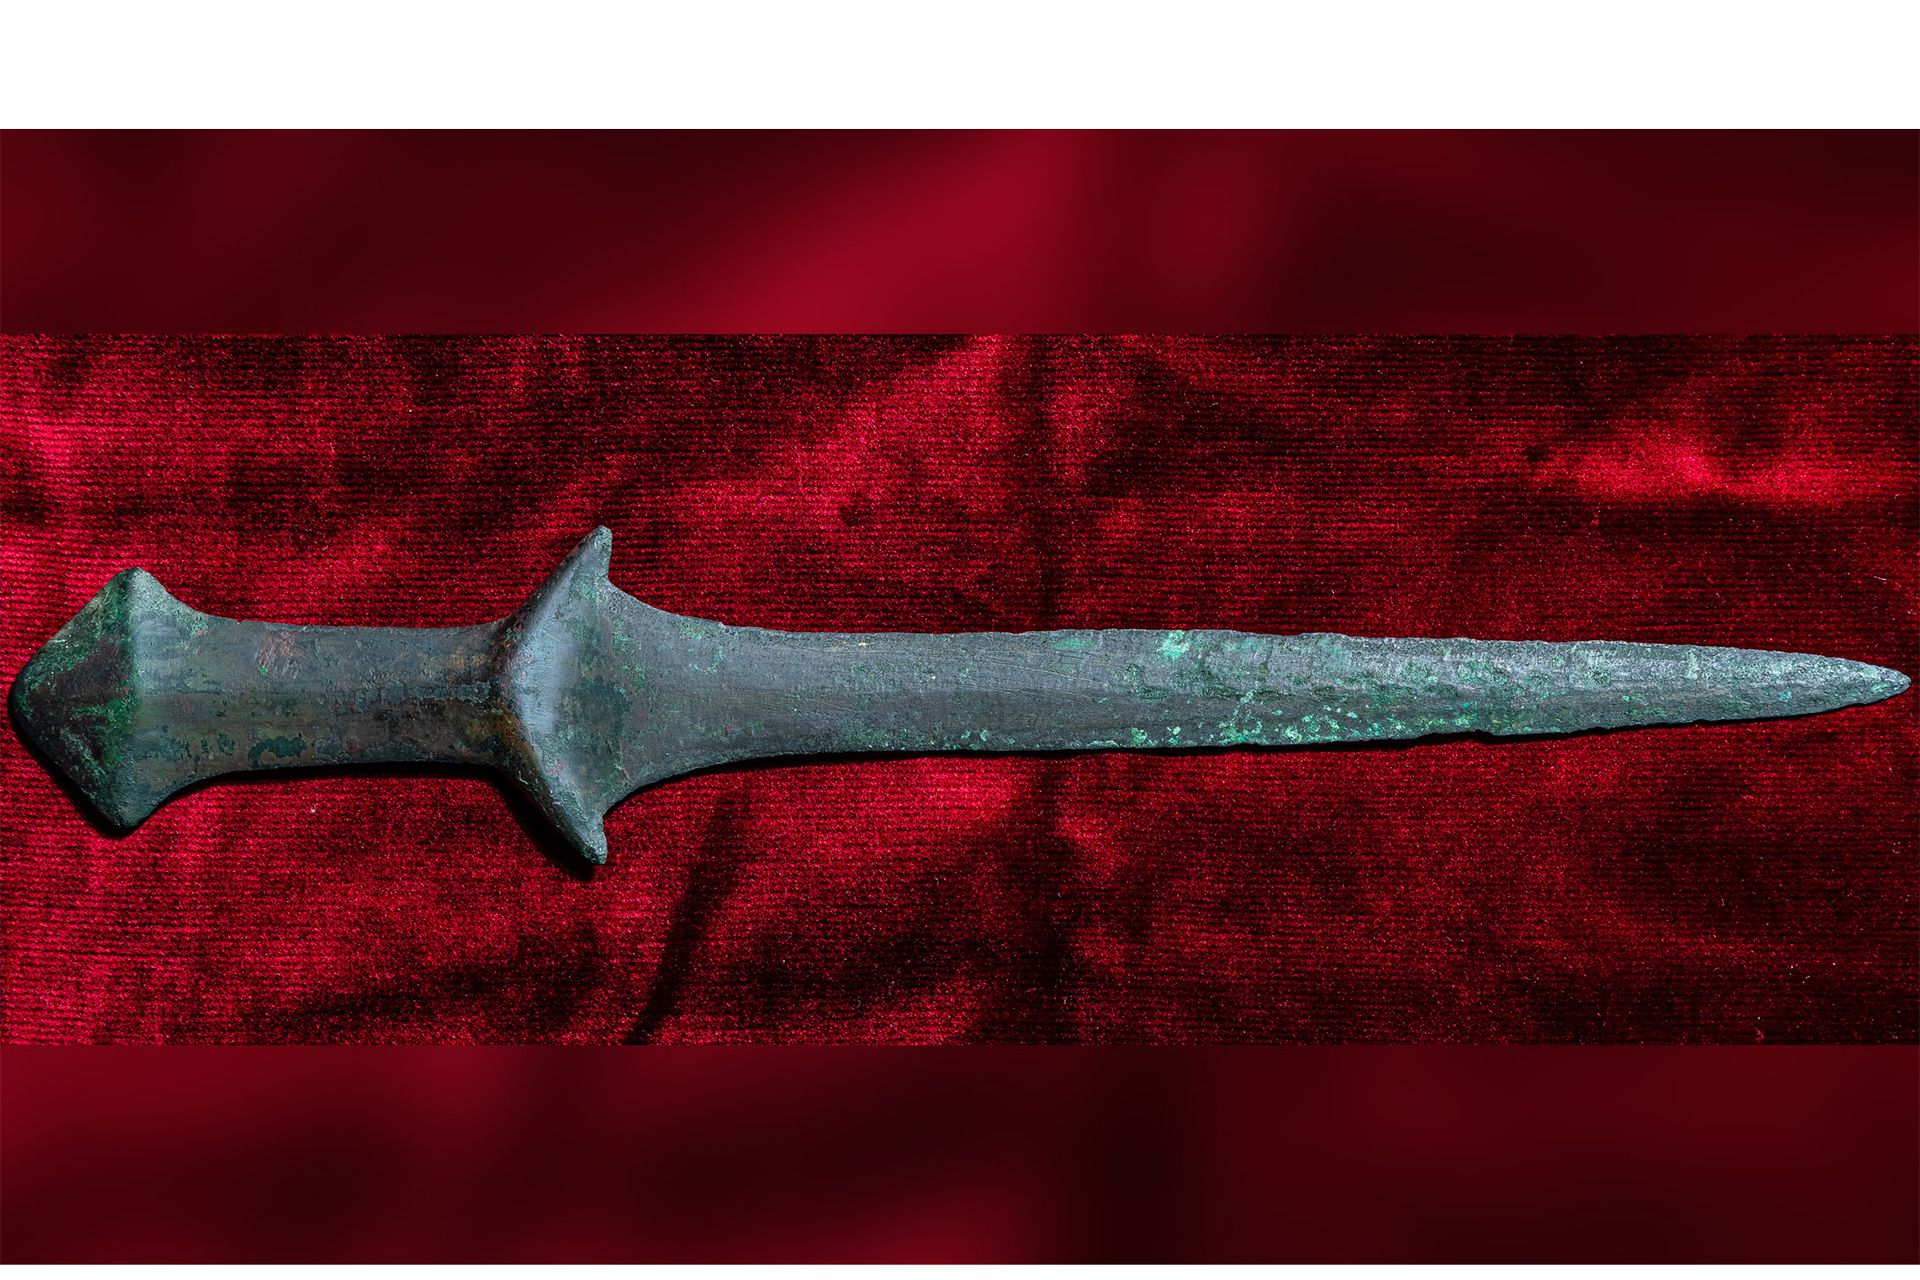 coolest ancient weapons/سلاح های باستانی جذاب